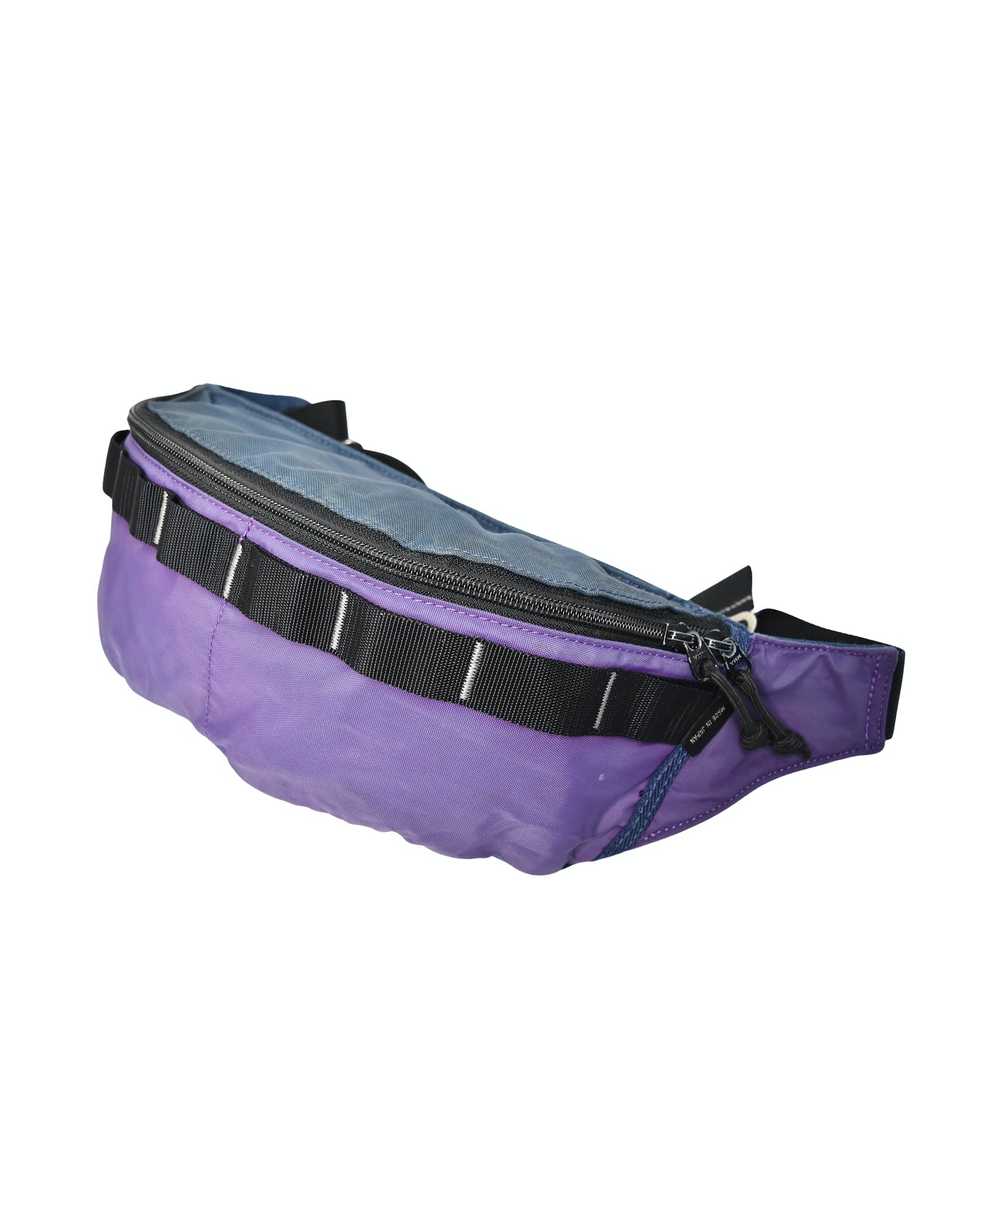 Porter color waist shoulder bag 27203 - 738 50 - image 1